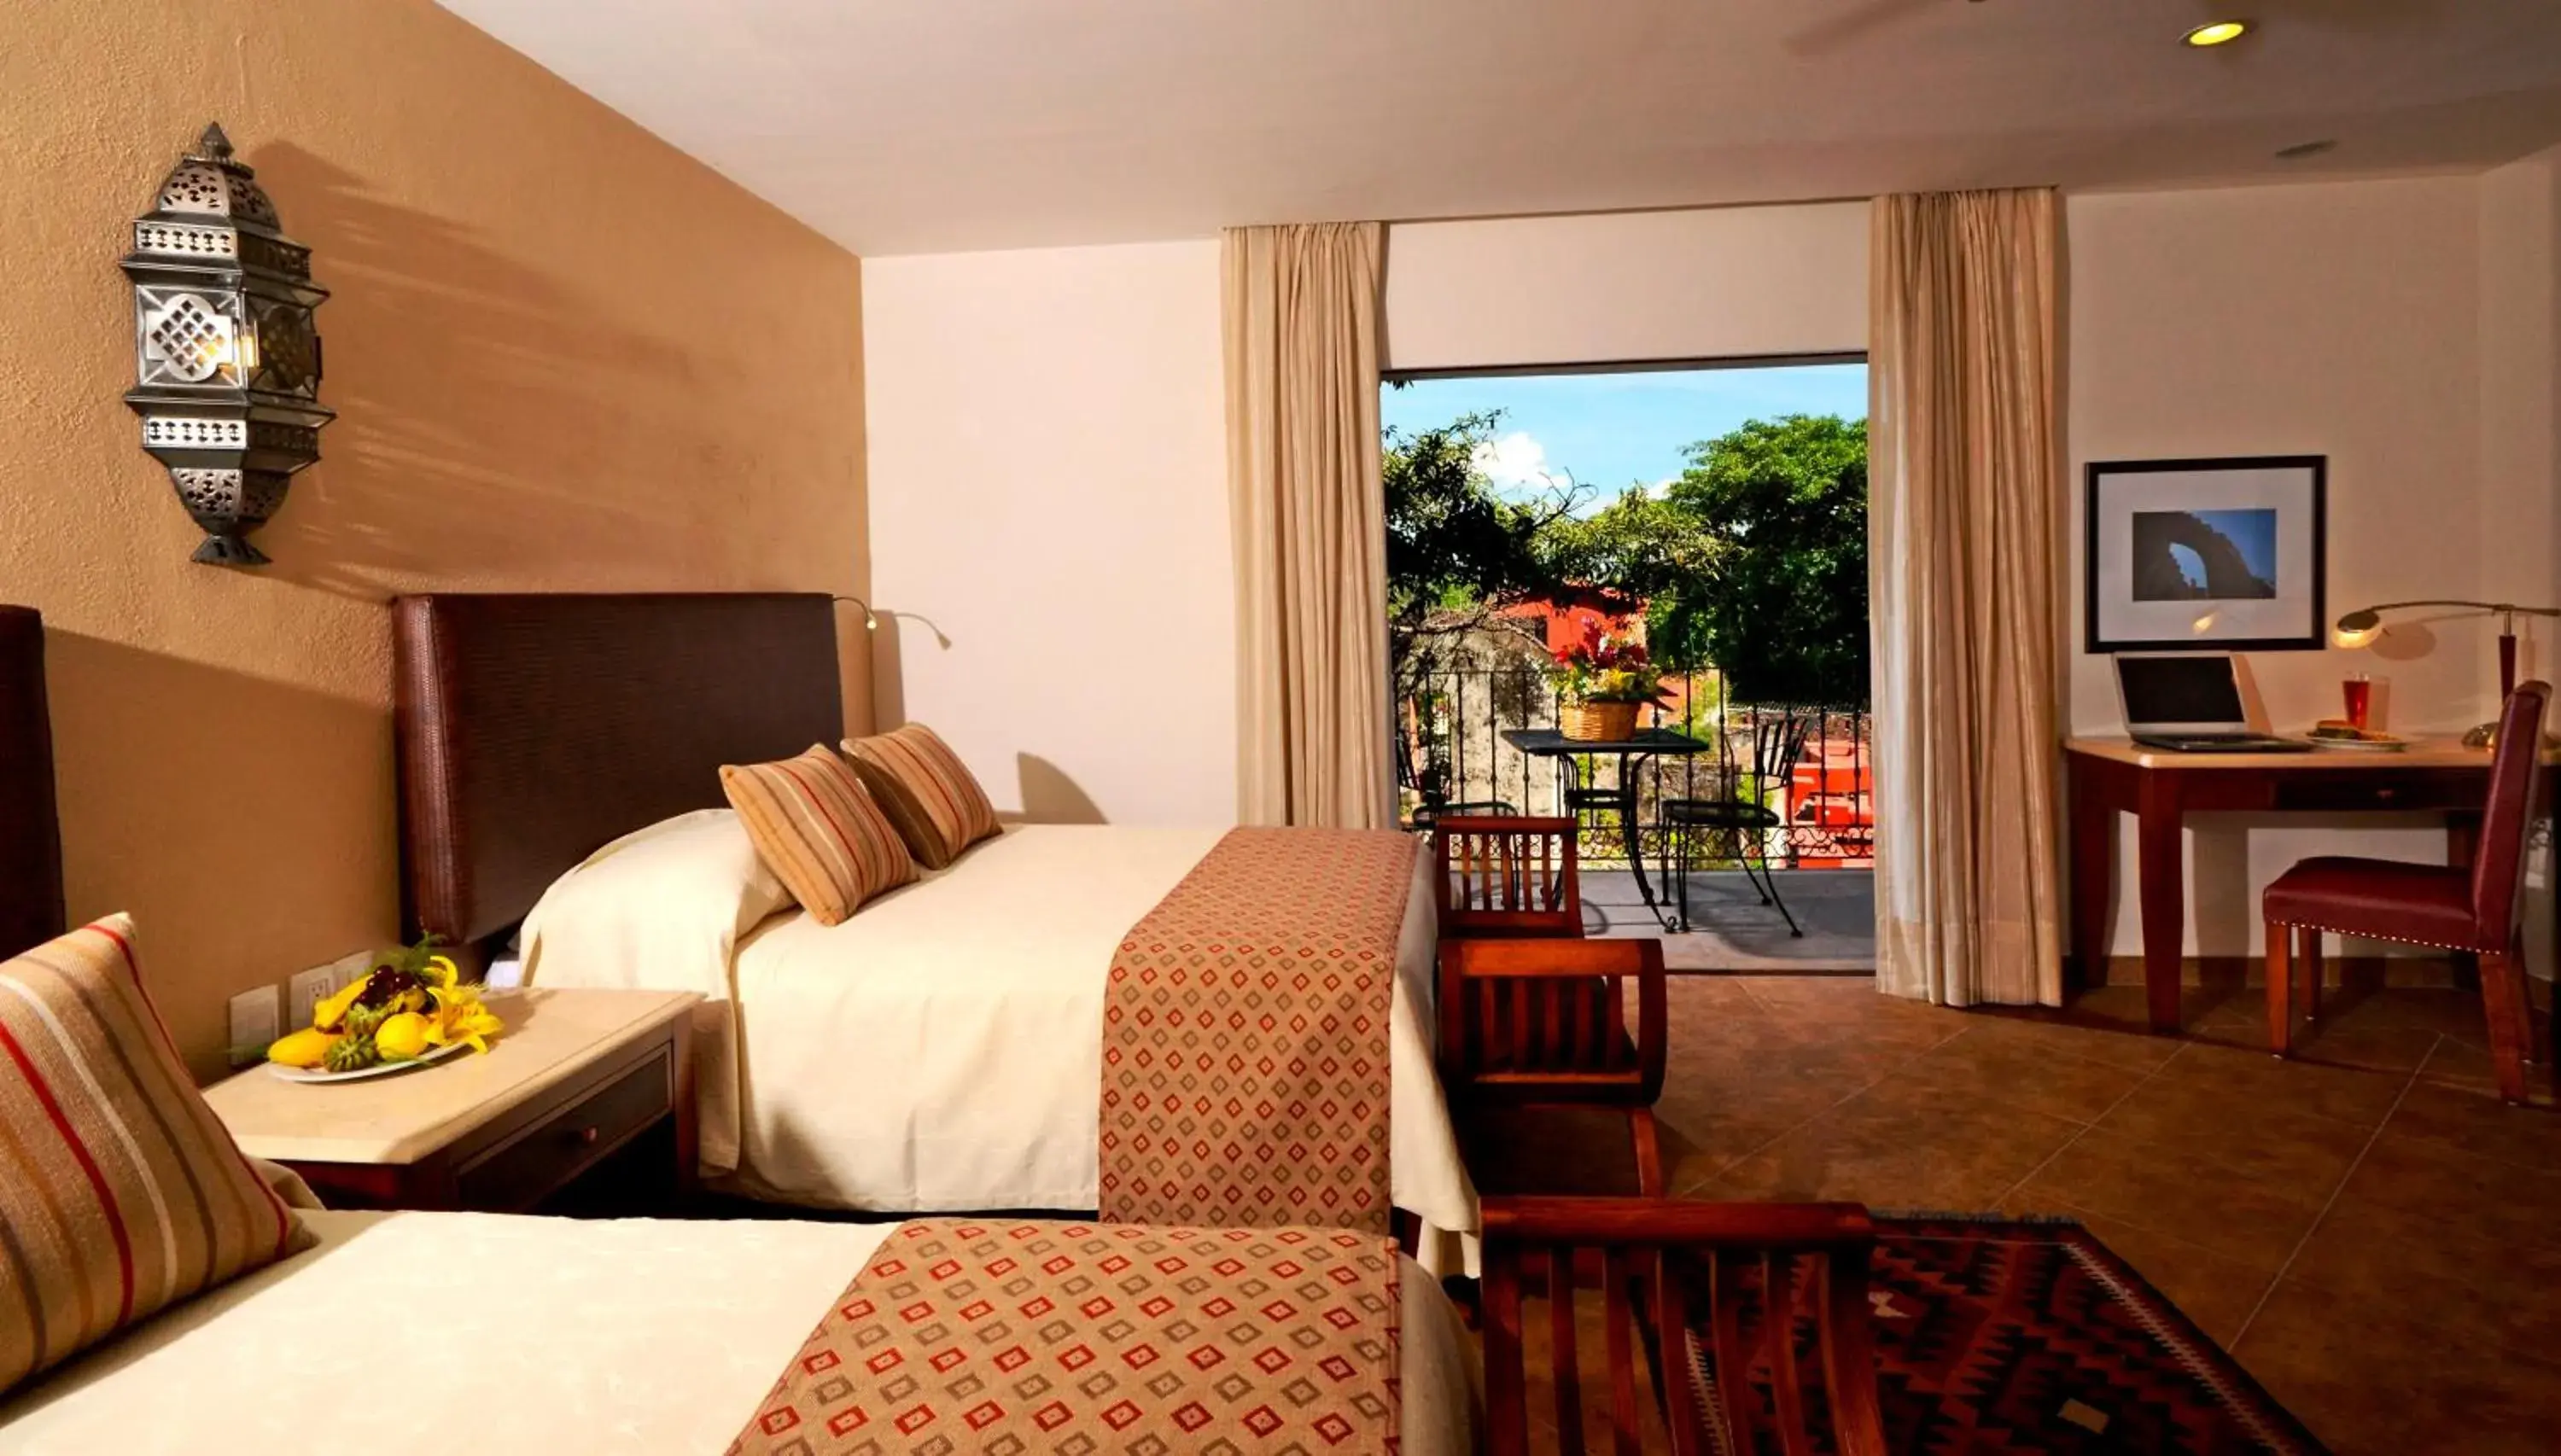 Bedroom in Hotel & Spa Hacienda de Cort